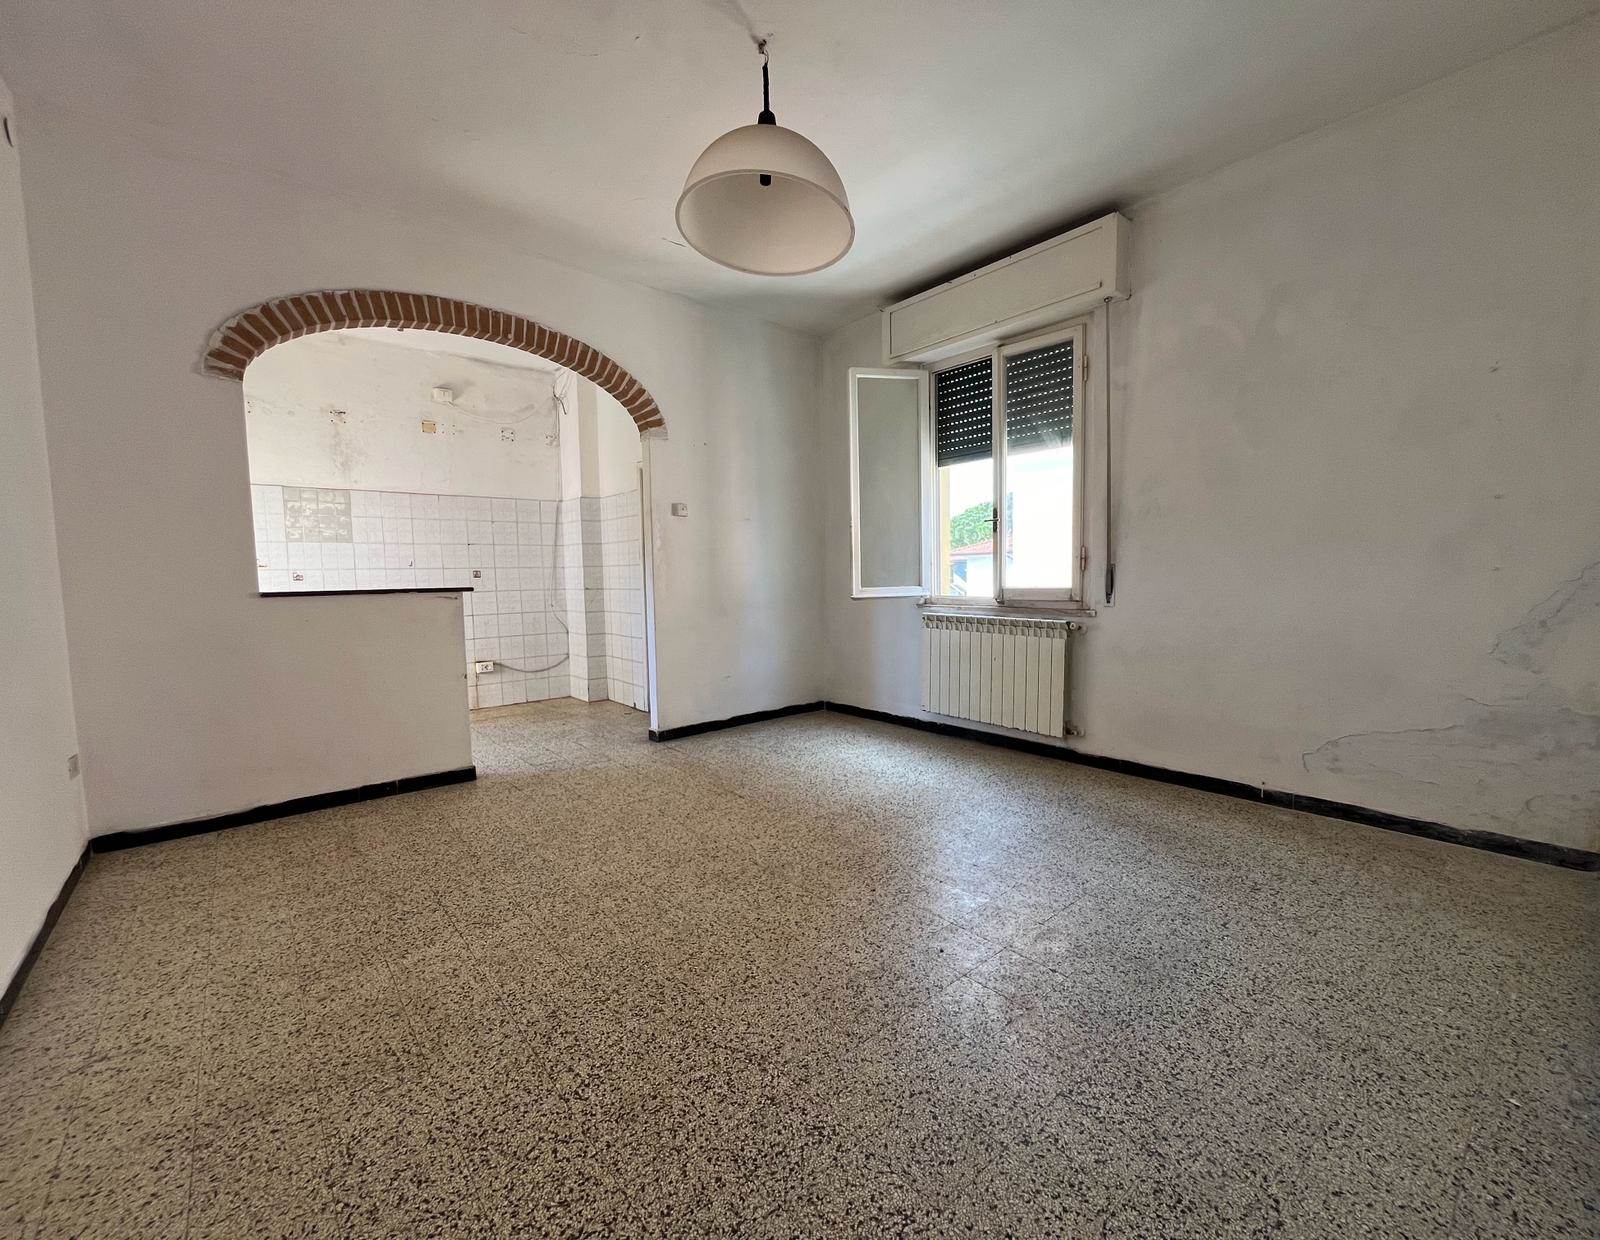 Appartamento in vendita a Bibbona, 5 locali, zona alifornia, prezzo € 160.000 | PortaleAgenzieImmobiliari.it